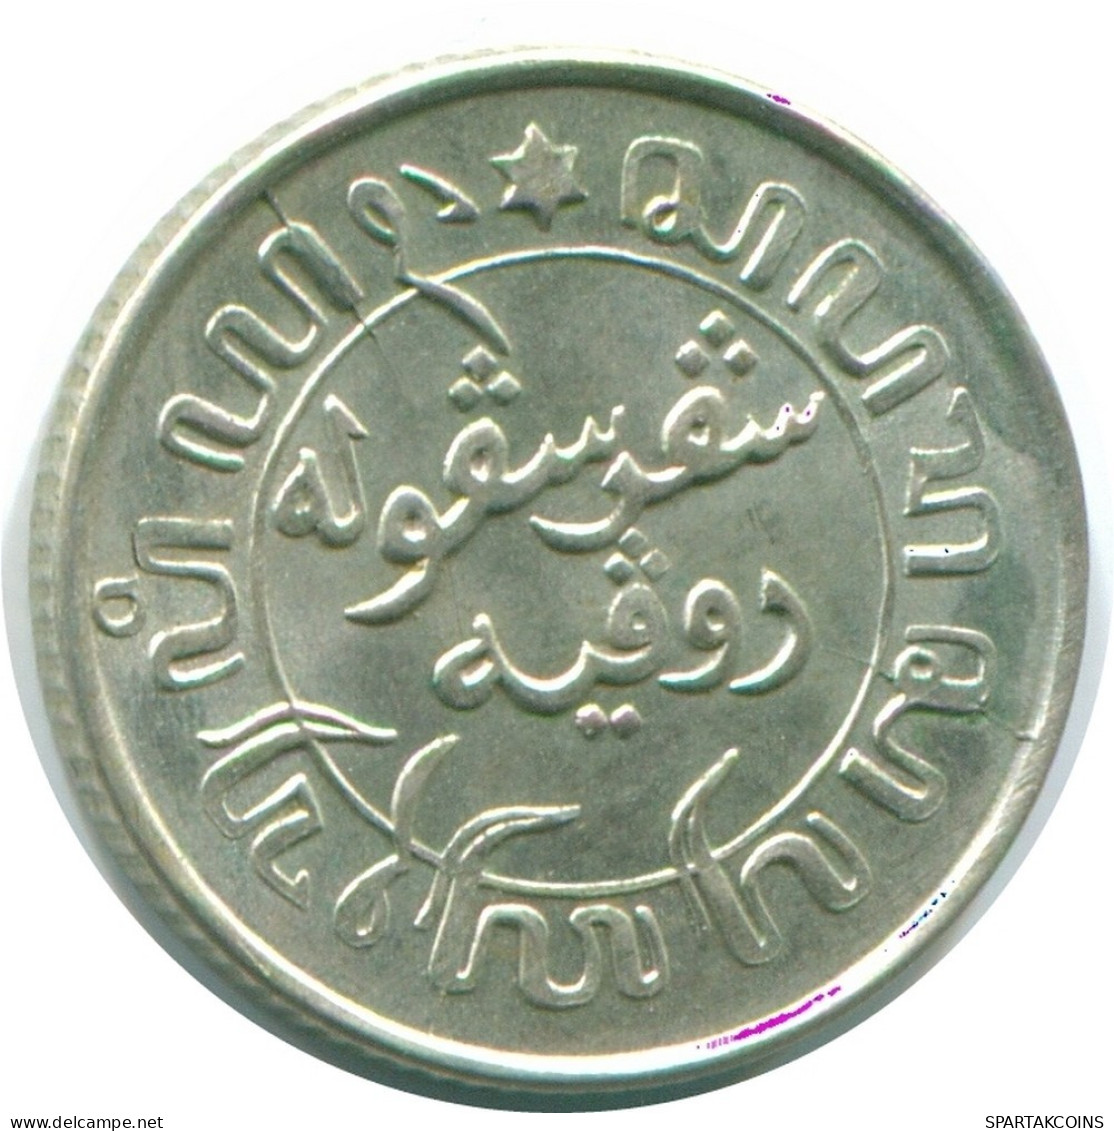 1/10 GULDEN 1941 S NIEDERLANDE OSTINDIEN SILBER Koloniale Münze #NL13813.3.D.A - Niederländisch-Indien